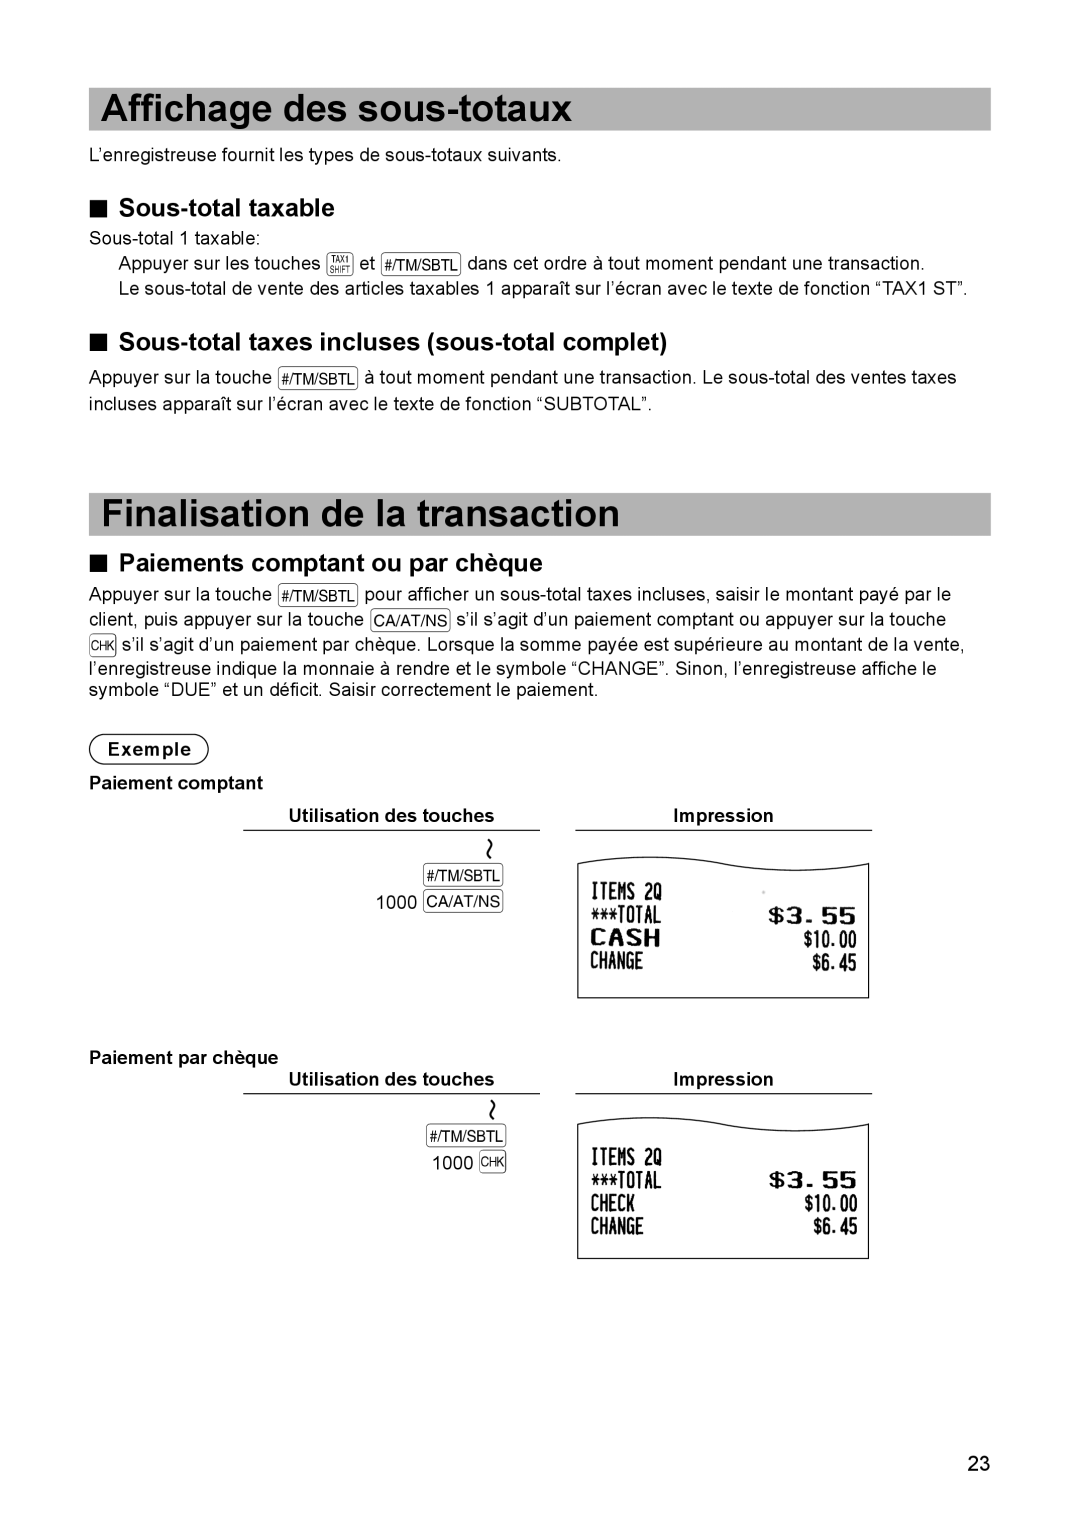 Sharp ER-A347A instruction manual Affichage des sous-totaux, Finalisation de la transaction, Sous-total taxable 